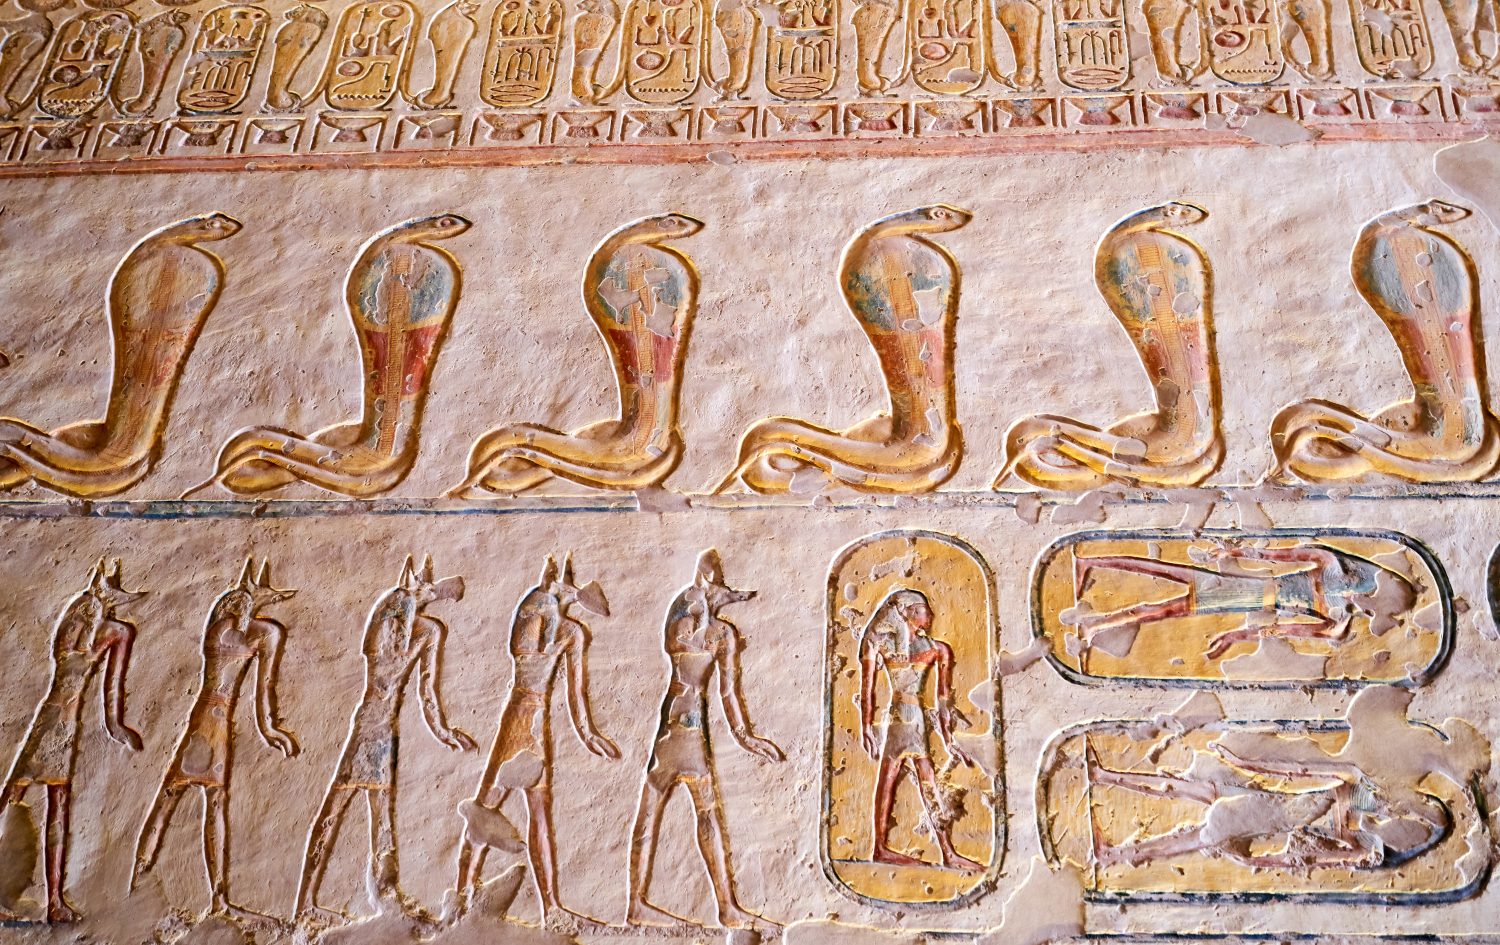                                                     Geroglifici egiziani di Wadjet, la dea cobra protettrice all'interno di una tomba.  Valle dei Re, Egitto.   